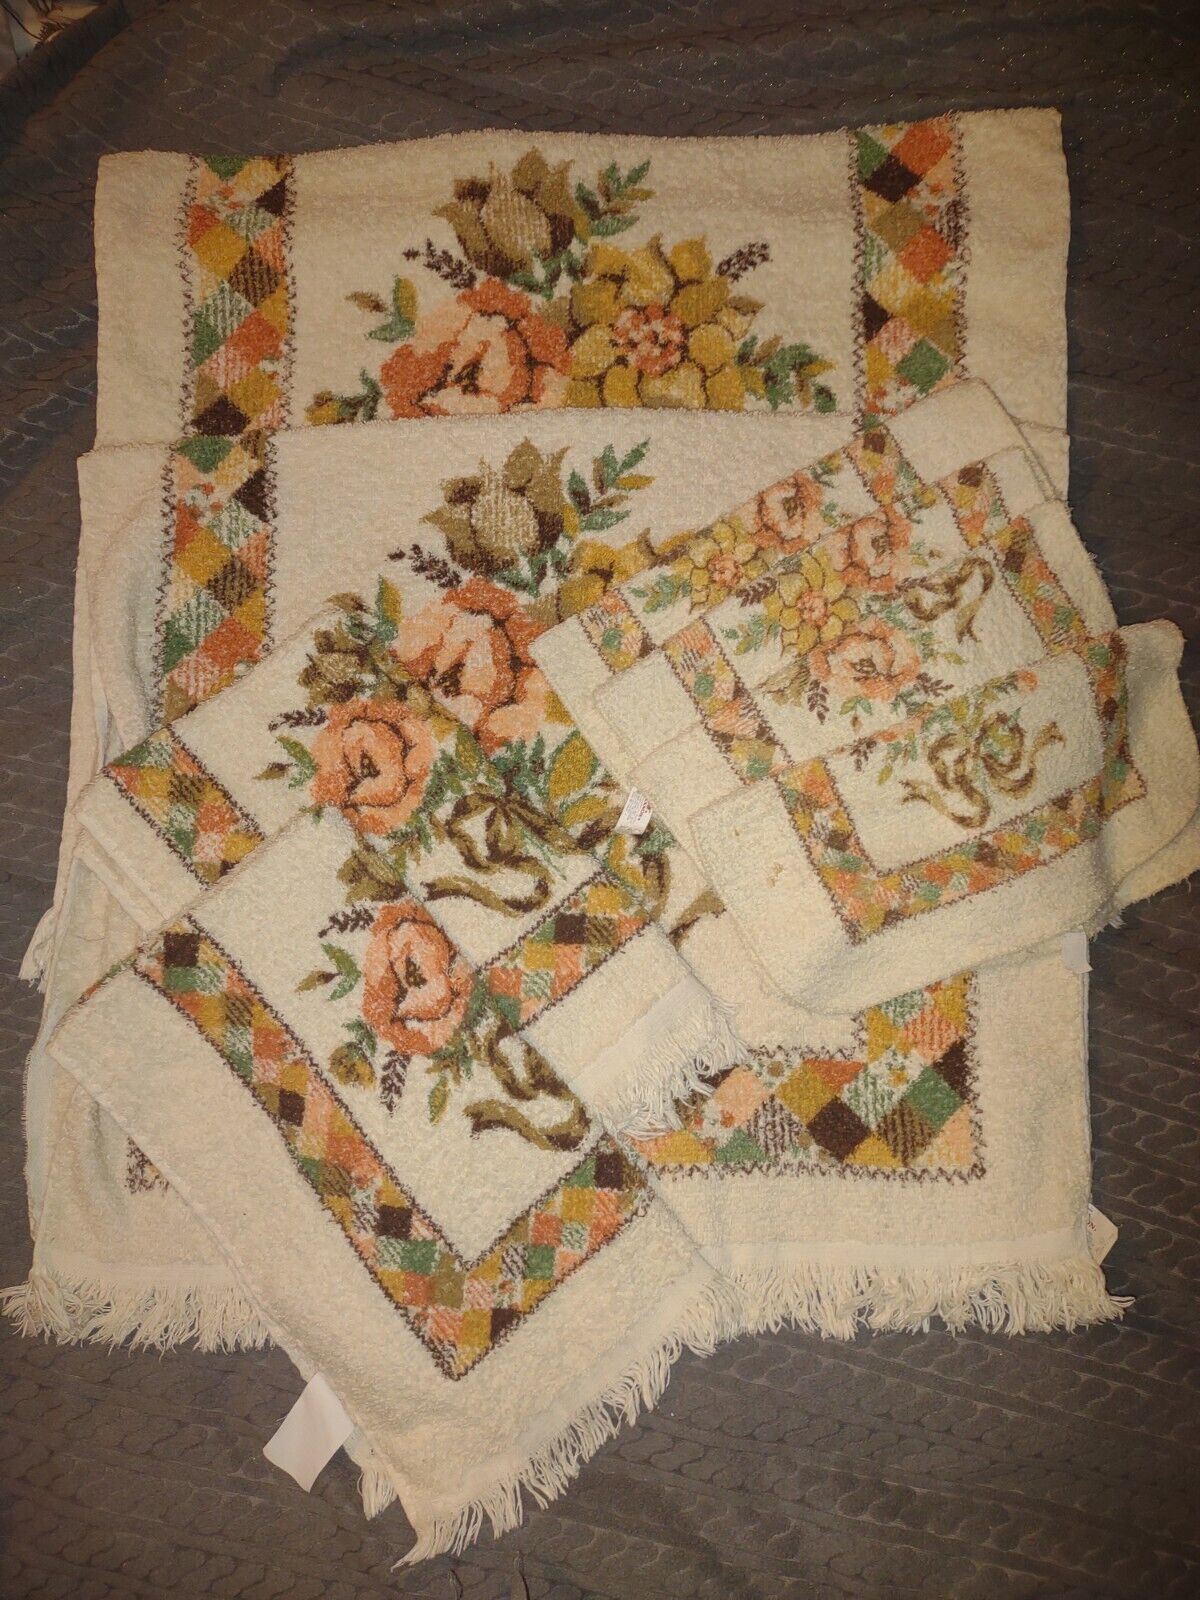 VTG Cannon 8 Piece Towels Set 70s Floral 2 body 2 Hand 4 Wash EUC BROWNS ORANGES